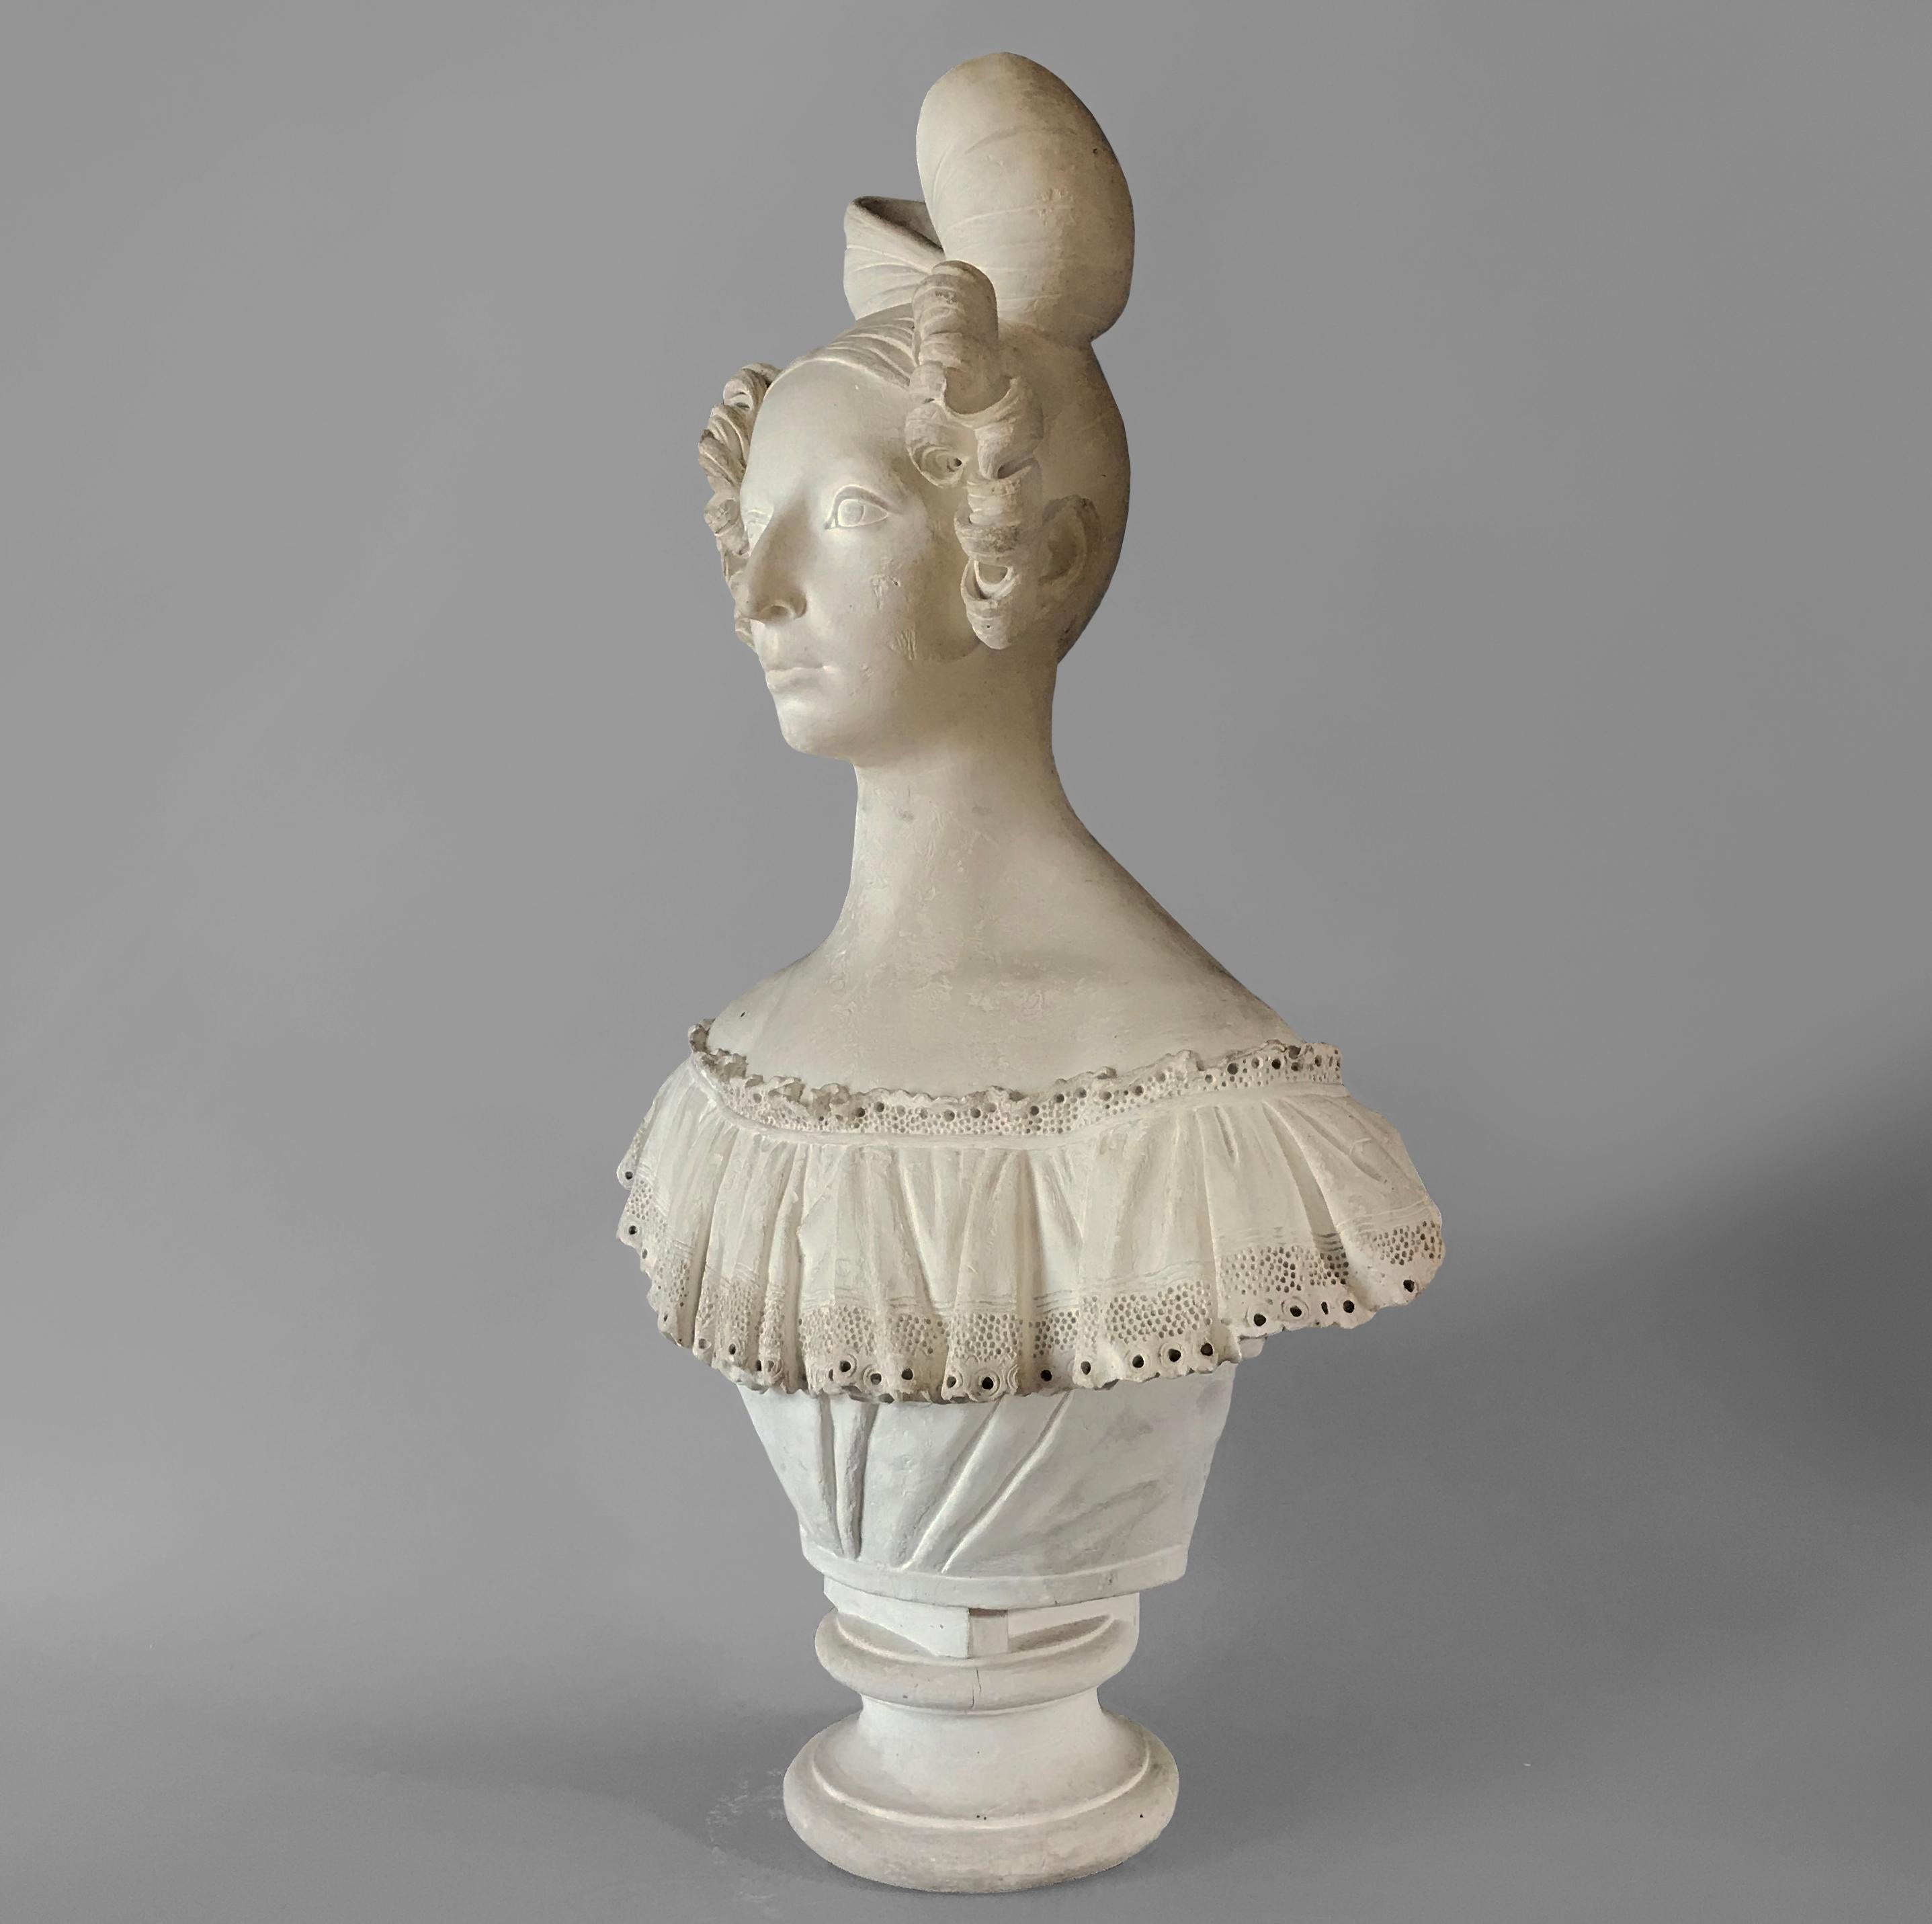 Un buste merveilleusement modelé d'une dame française montrant son étonnante chevelure coiffée de boucles avec un grand nœud, portant un haut en dentelle froncé et complexe et assise sur un socle à la taille profonde.